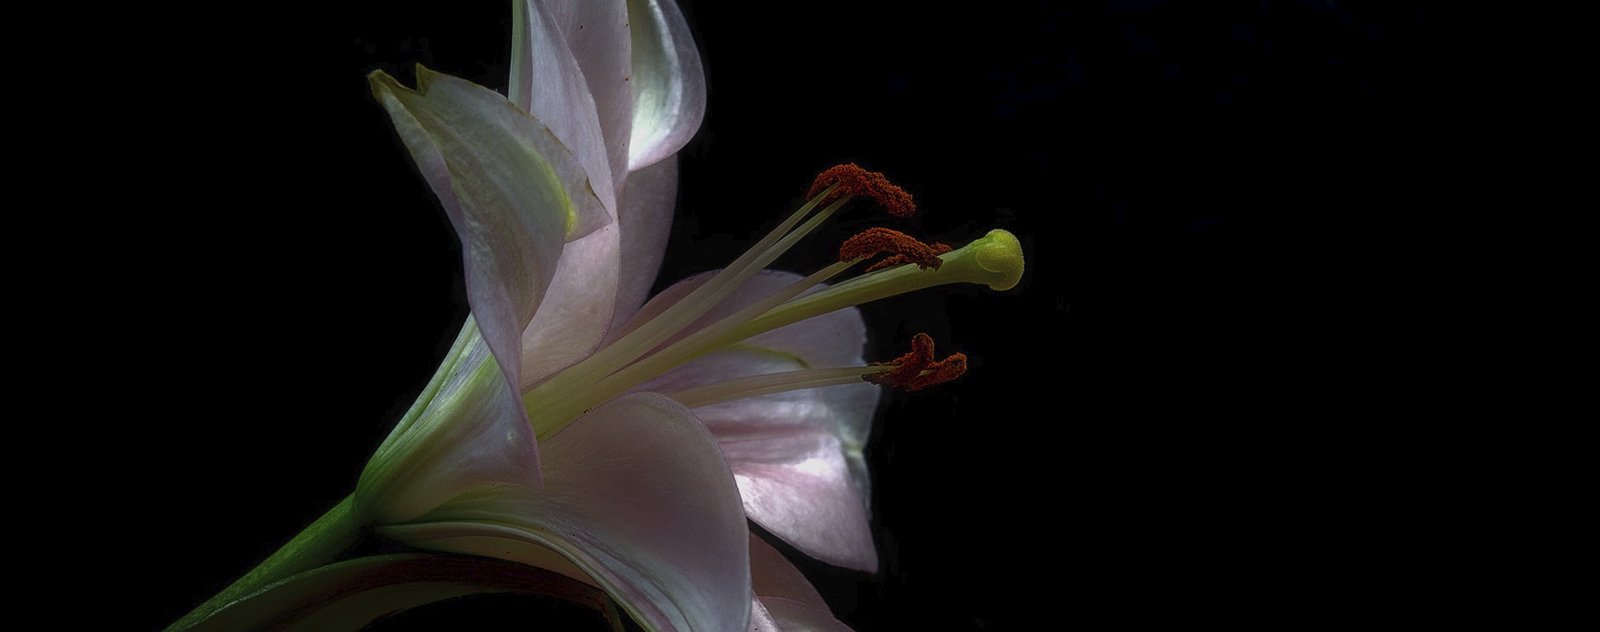 trinité universal plnning lotus fleur de lys